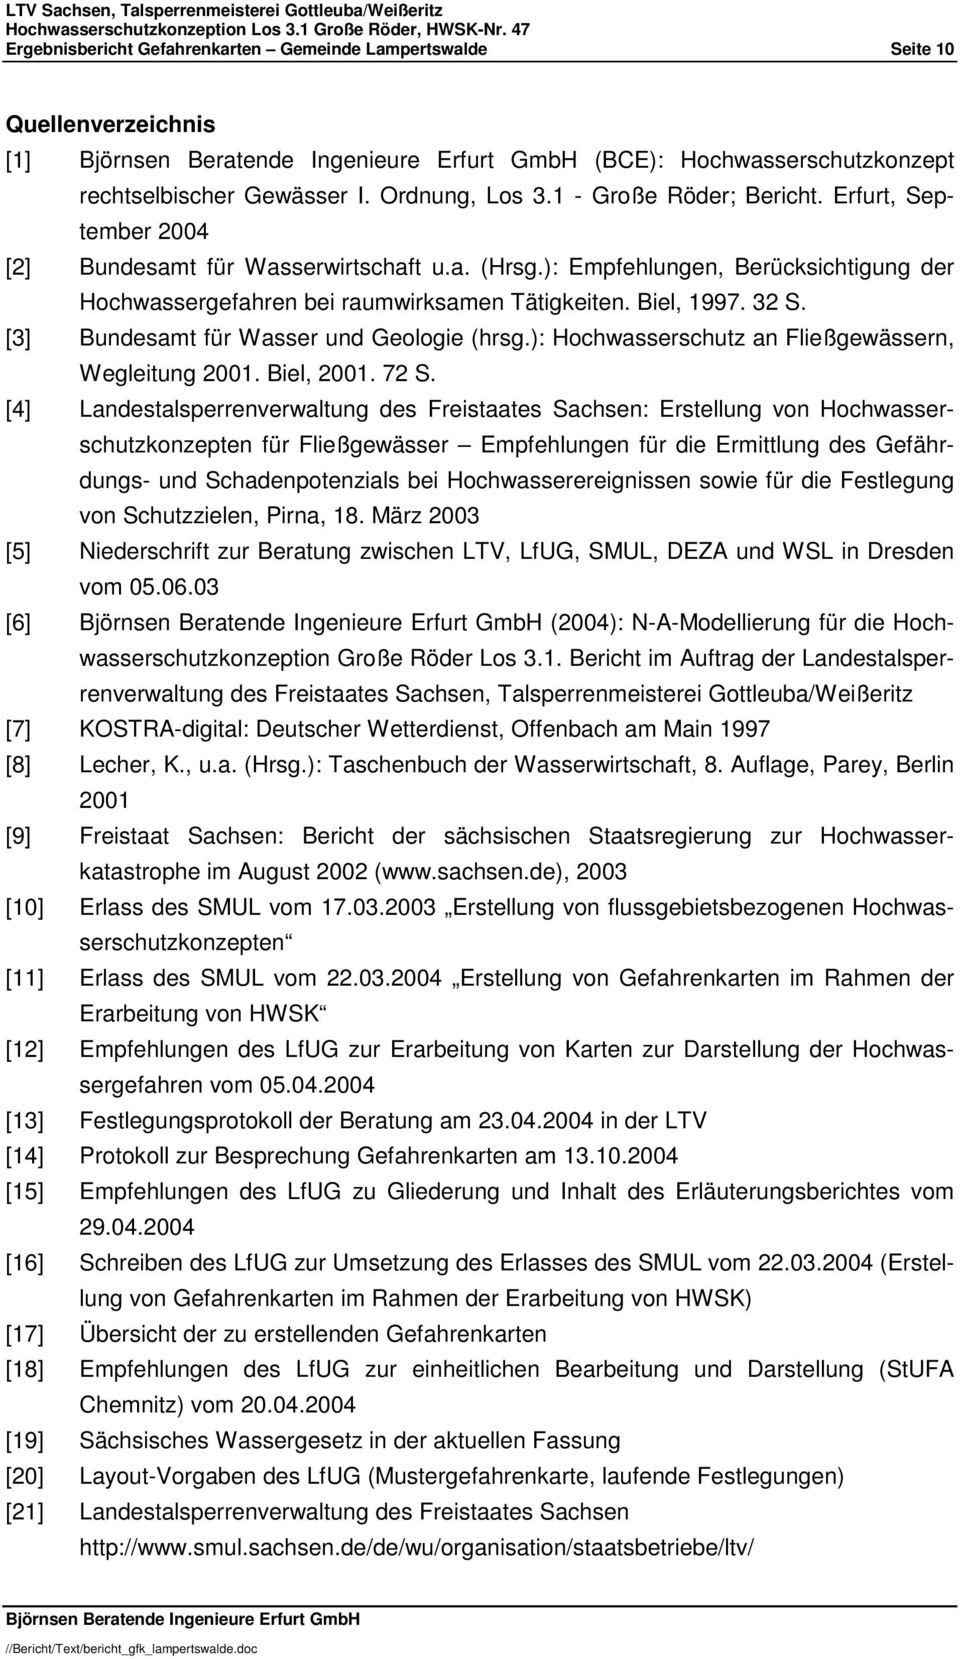 [3] Bundesamt für Wasser und Geologie (hrsg.): Hochwasserschutz an Fließgewässern, Wegleitung 2001. Biel, 2001. 72 S.